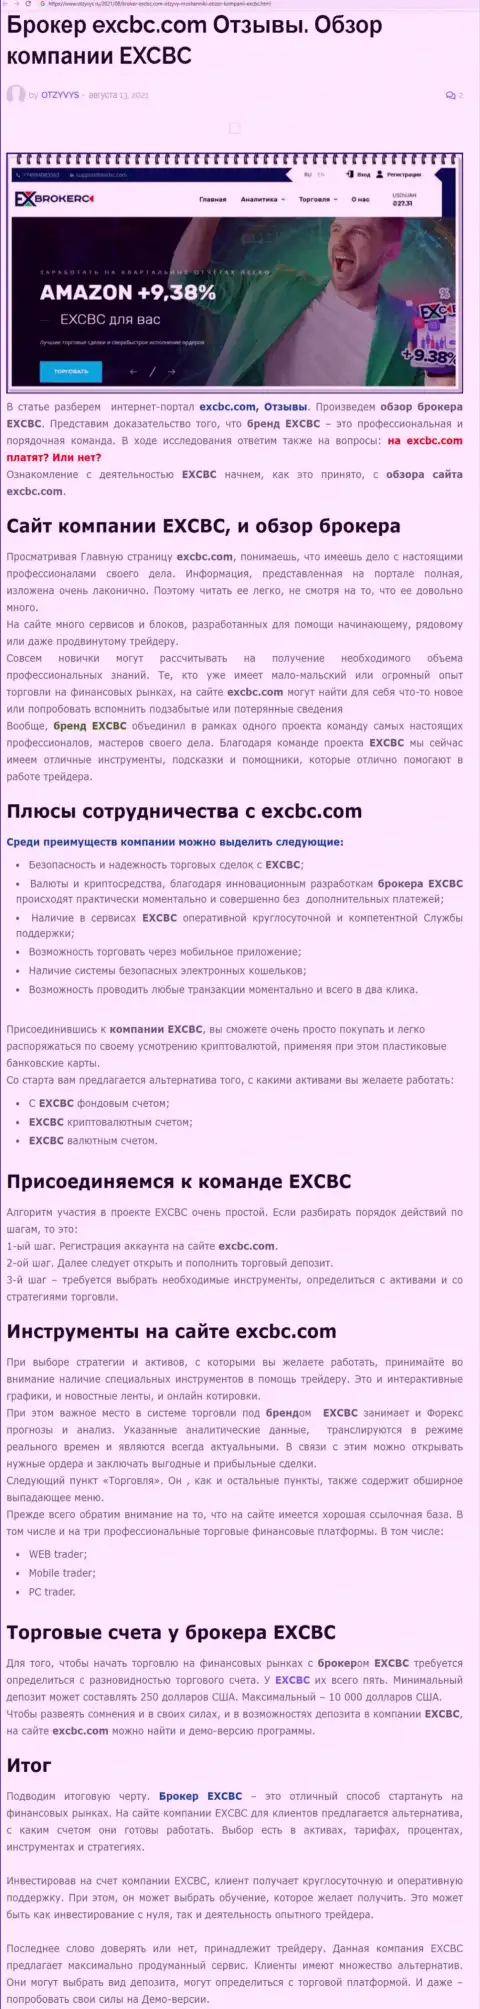 ЕХЧЕНЖБК Лтд Инк - это честная и надежная forex брокерская компания, об этом можно узнать из информационного материала на сайте Otzyvys Ru